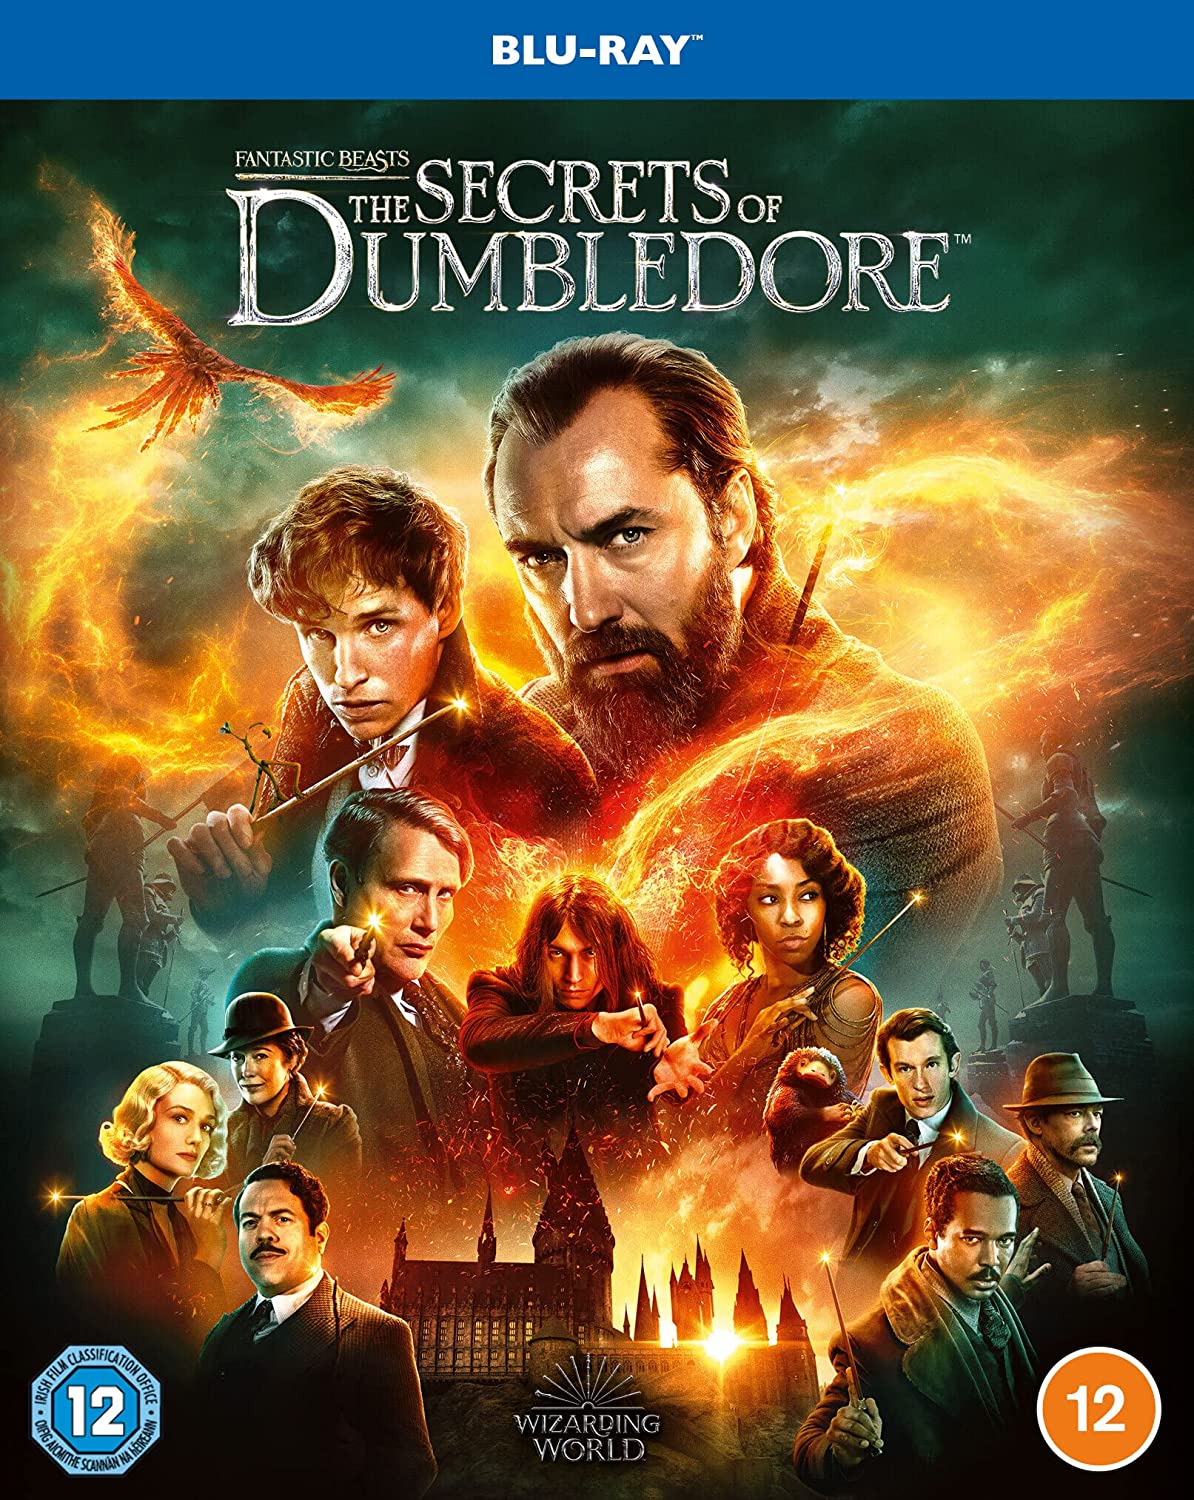 Les secrets de Dumbledore" sur Blu-ray plus le livre officiel du scénario. 3